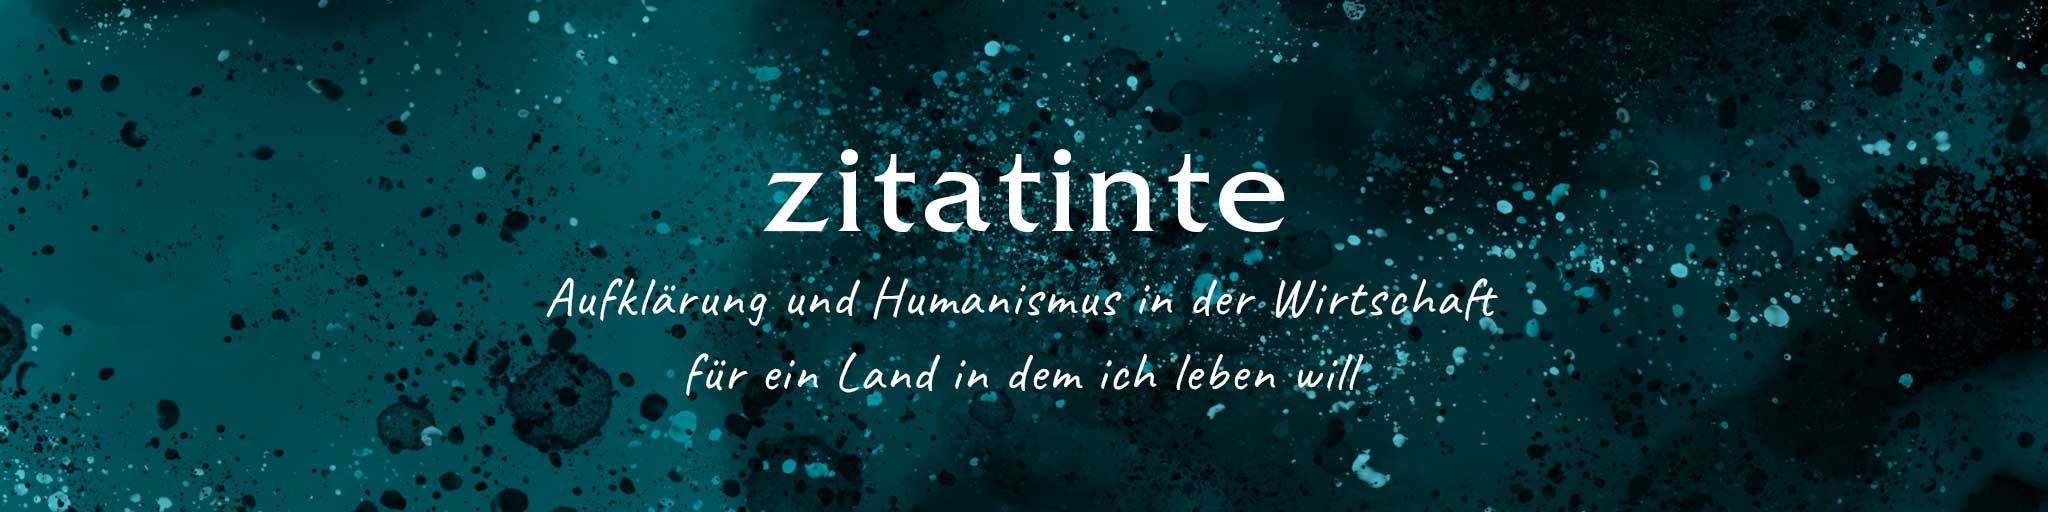 zitatinte: Zitate in Tinte. Bild: copy Franziska Köppe | zitatinte